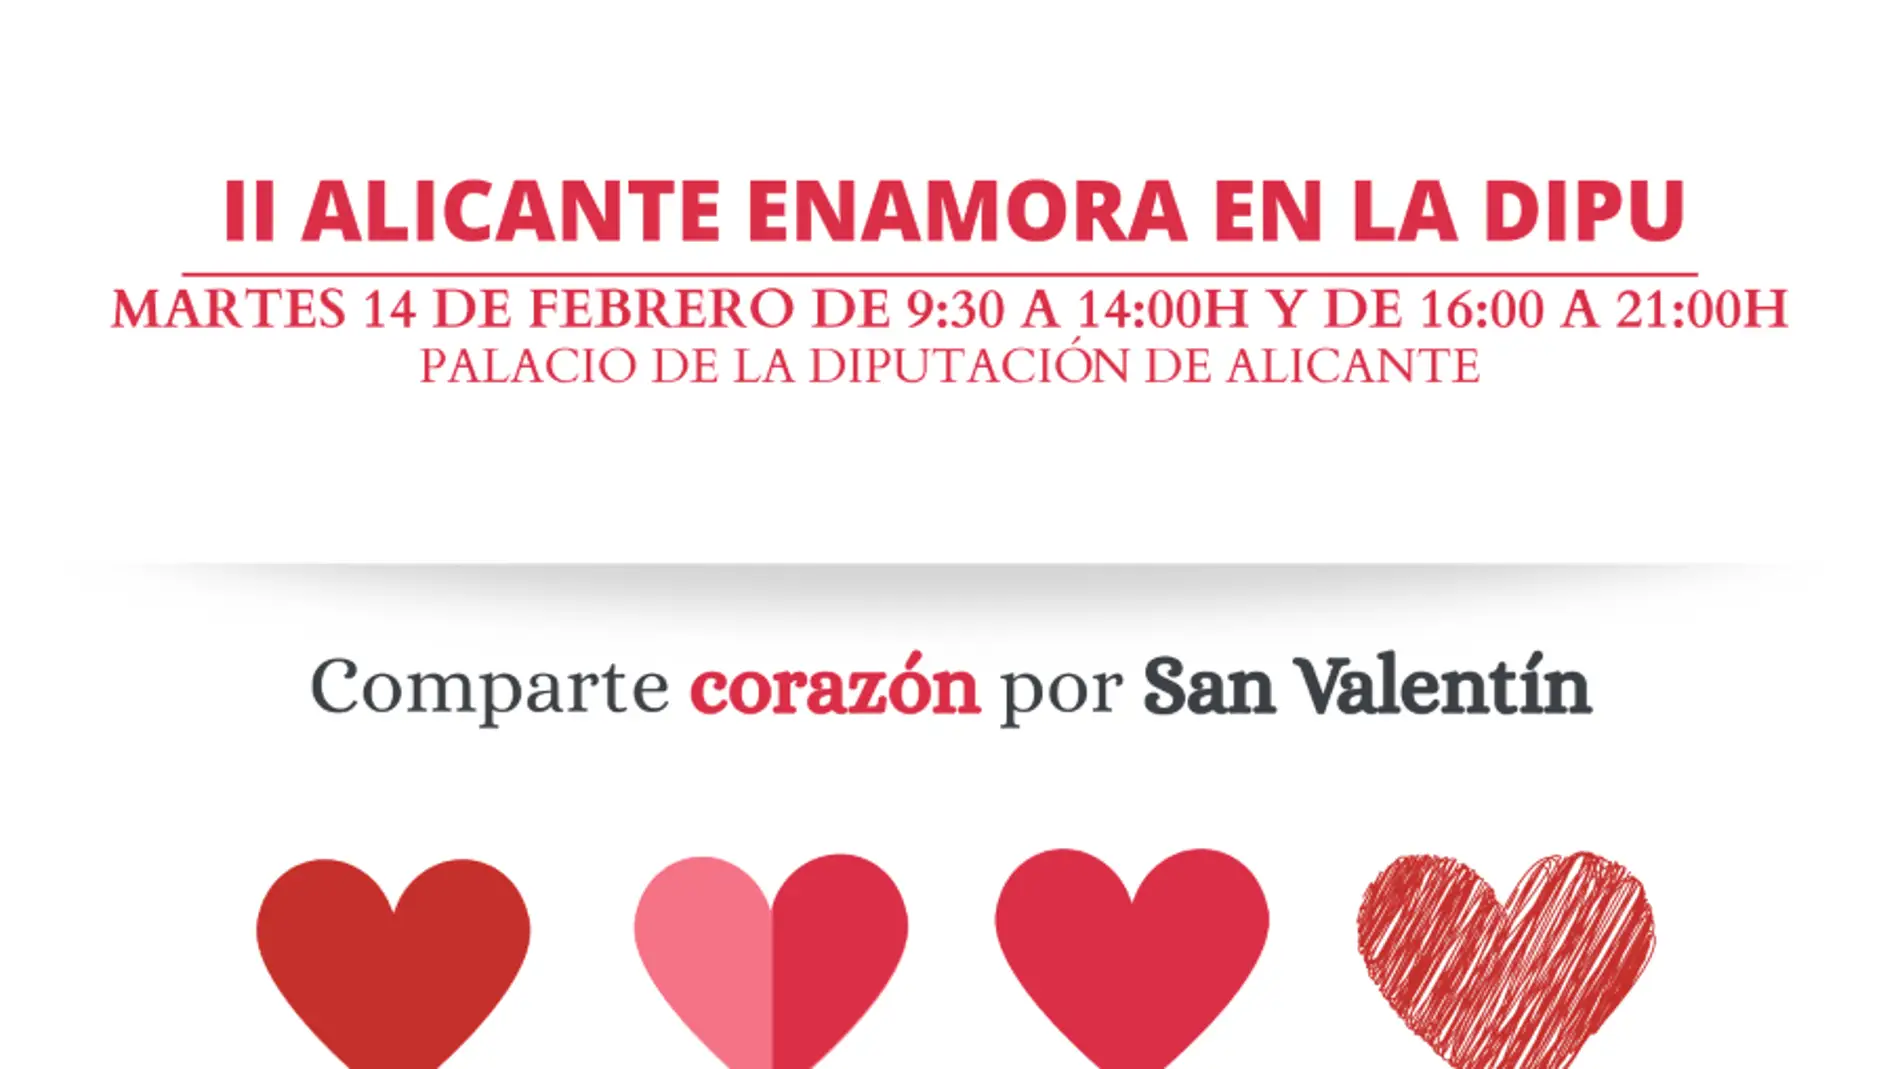 Cartel de la donación en la Diputación de Alicante con motivo de San Valentín